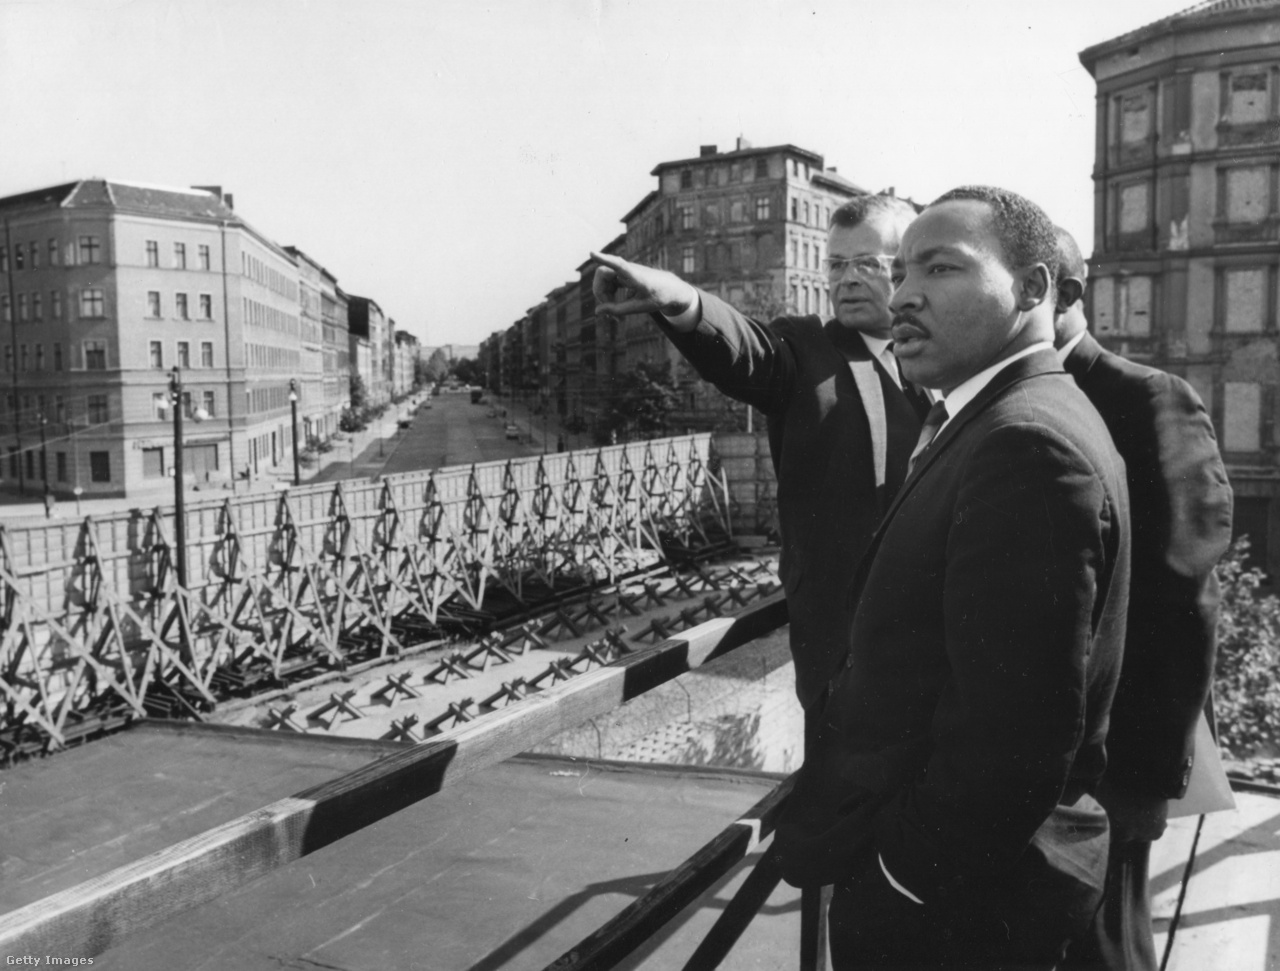 Berlin, Németország, 1964. szeptember 12. Dr. Martin Luther King Jr. a berlini fal szovjet szektorának határán, a Bernauer utcában